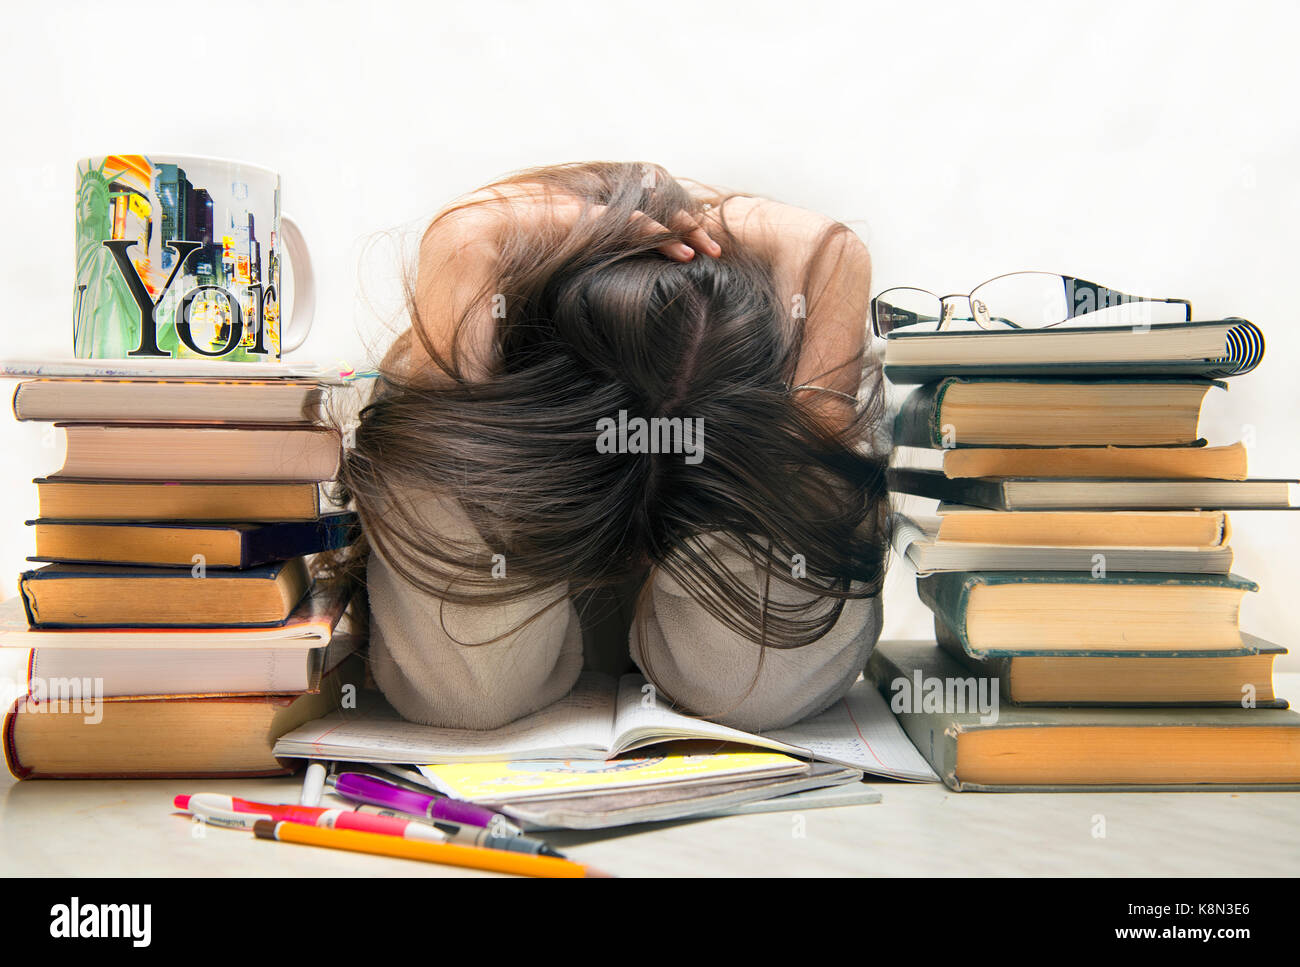 Menschen, Bildung, Sitzung, Prüfungen und Schule Konzept - müde Schüler Mädchen oder Junge Frau mit Bücher schlafen Stockfoto